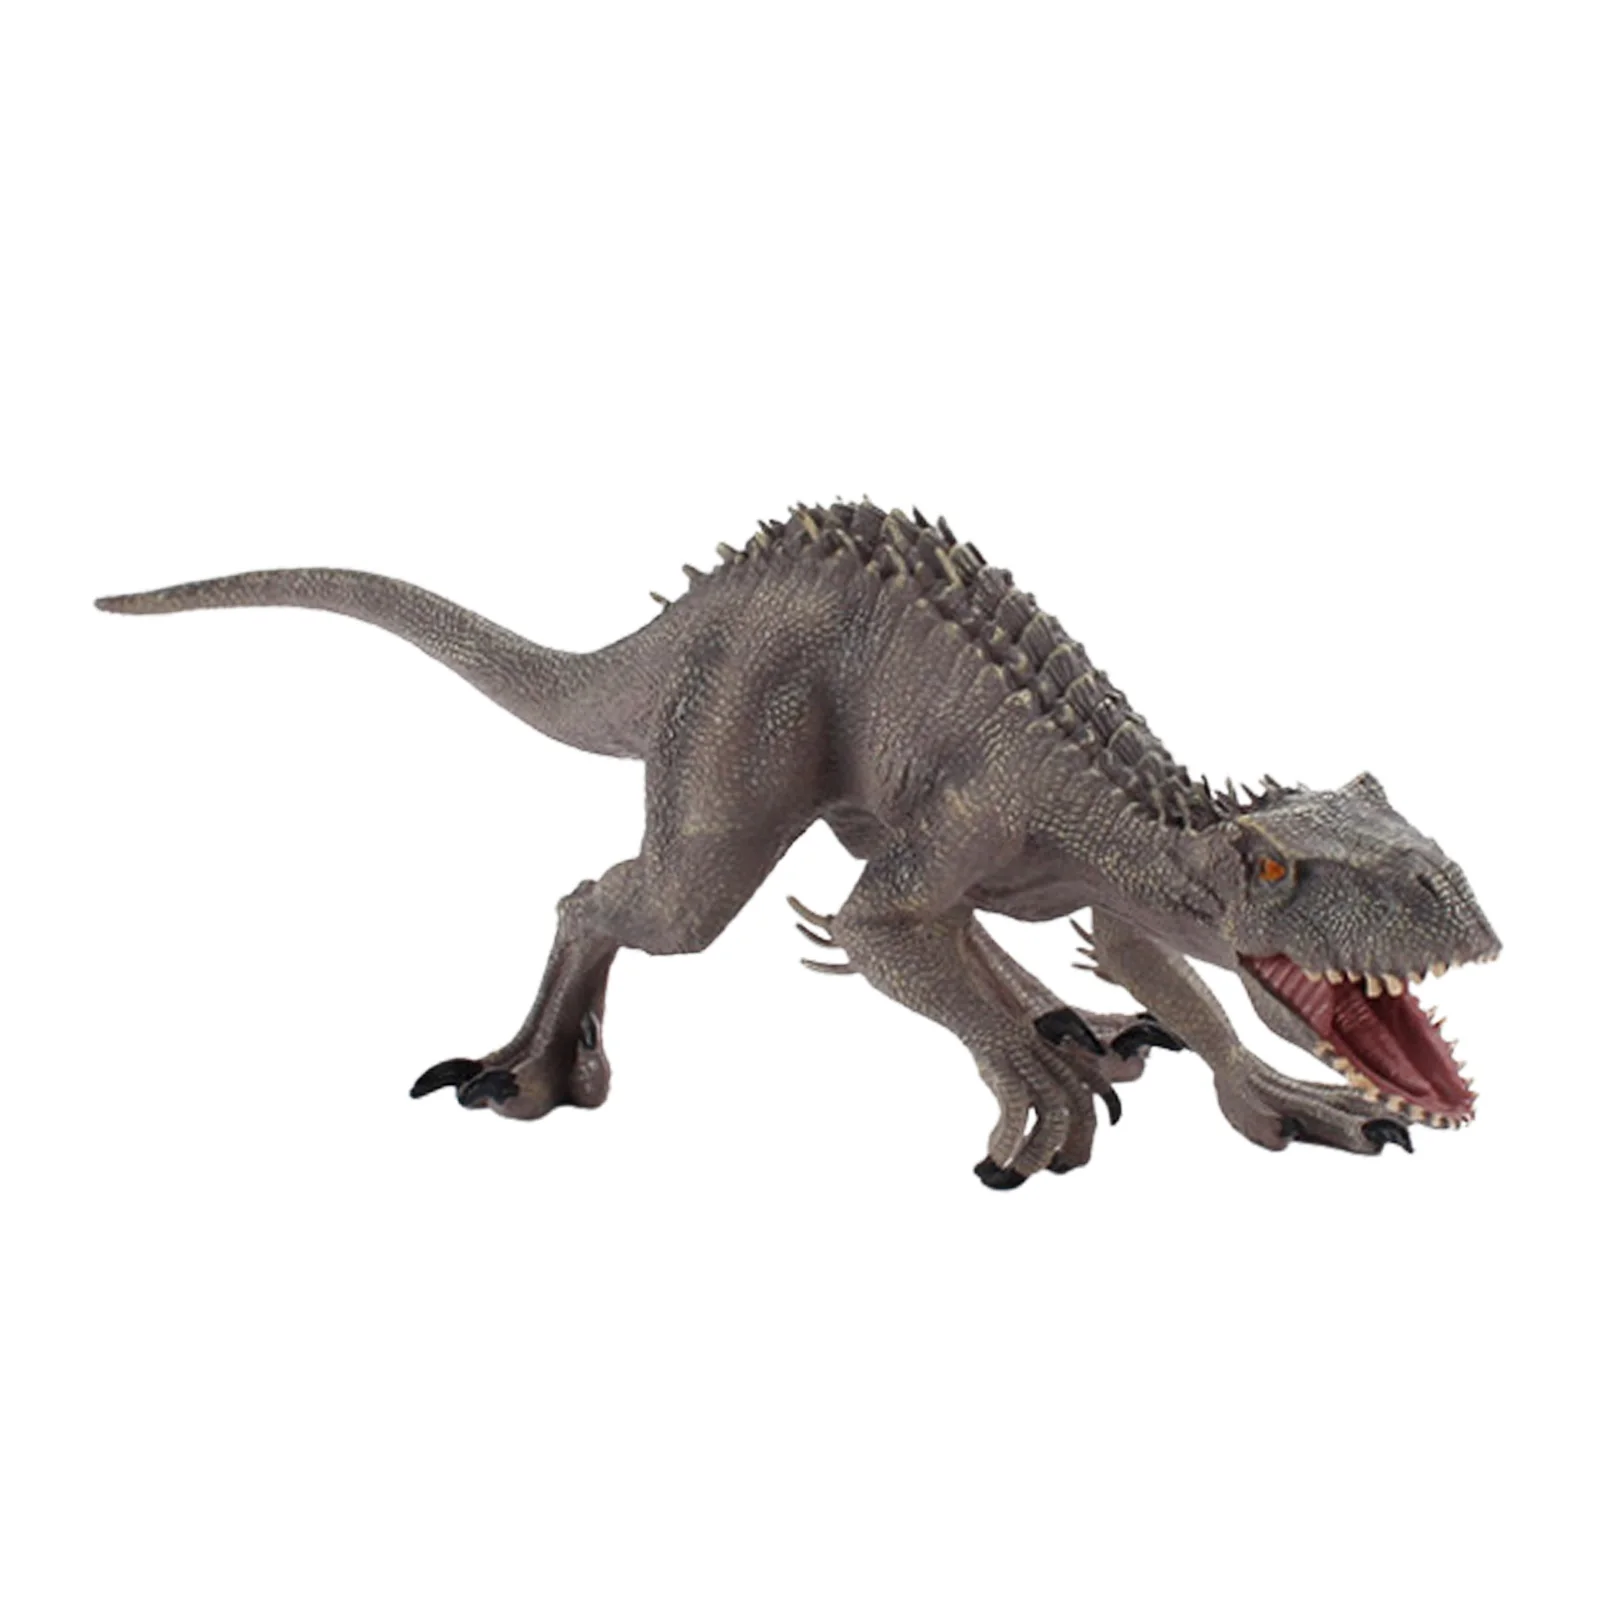 

Динозавр мир Юрского периода, Динозавр мир Юрского периода, реалистичный развивающий динозавр, игрушки, динозавры, фигурки, отлично подходят для коллекционеров